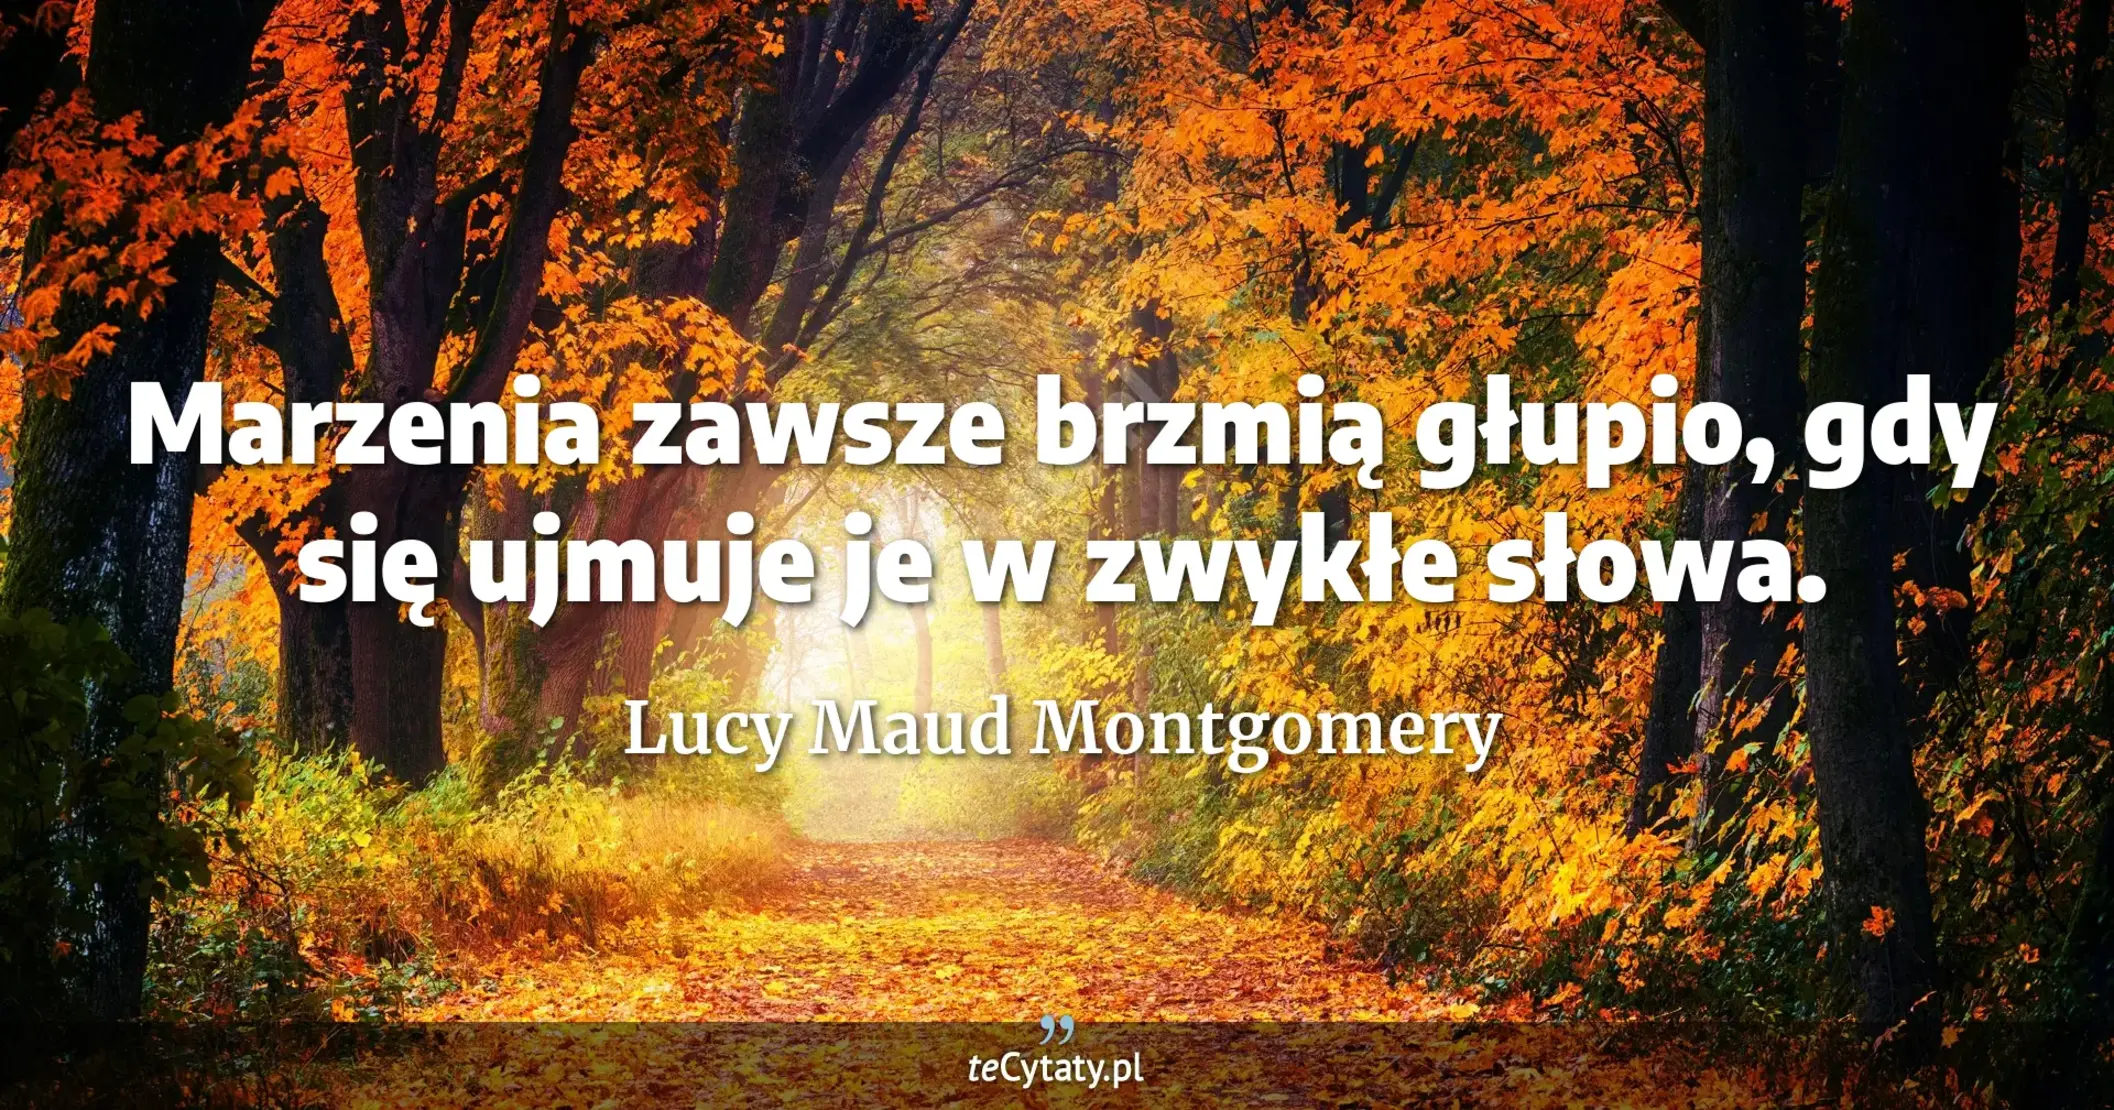 Marzenia zawsze brzmią głupio, gdy się ujmuje je w zwykłe słowa. - Lucy Maud Montgomery